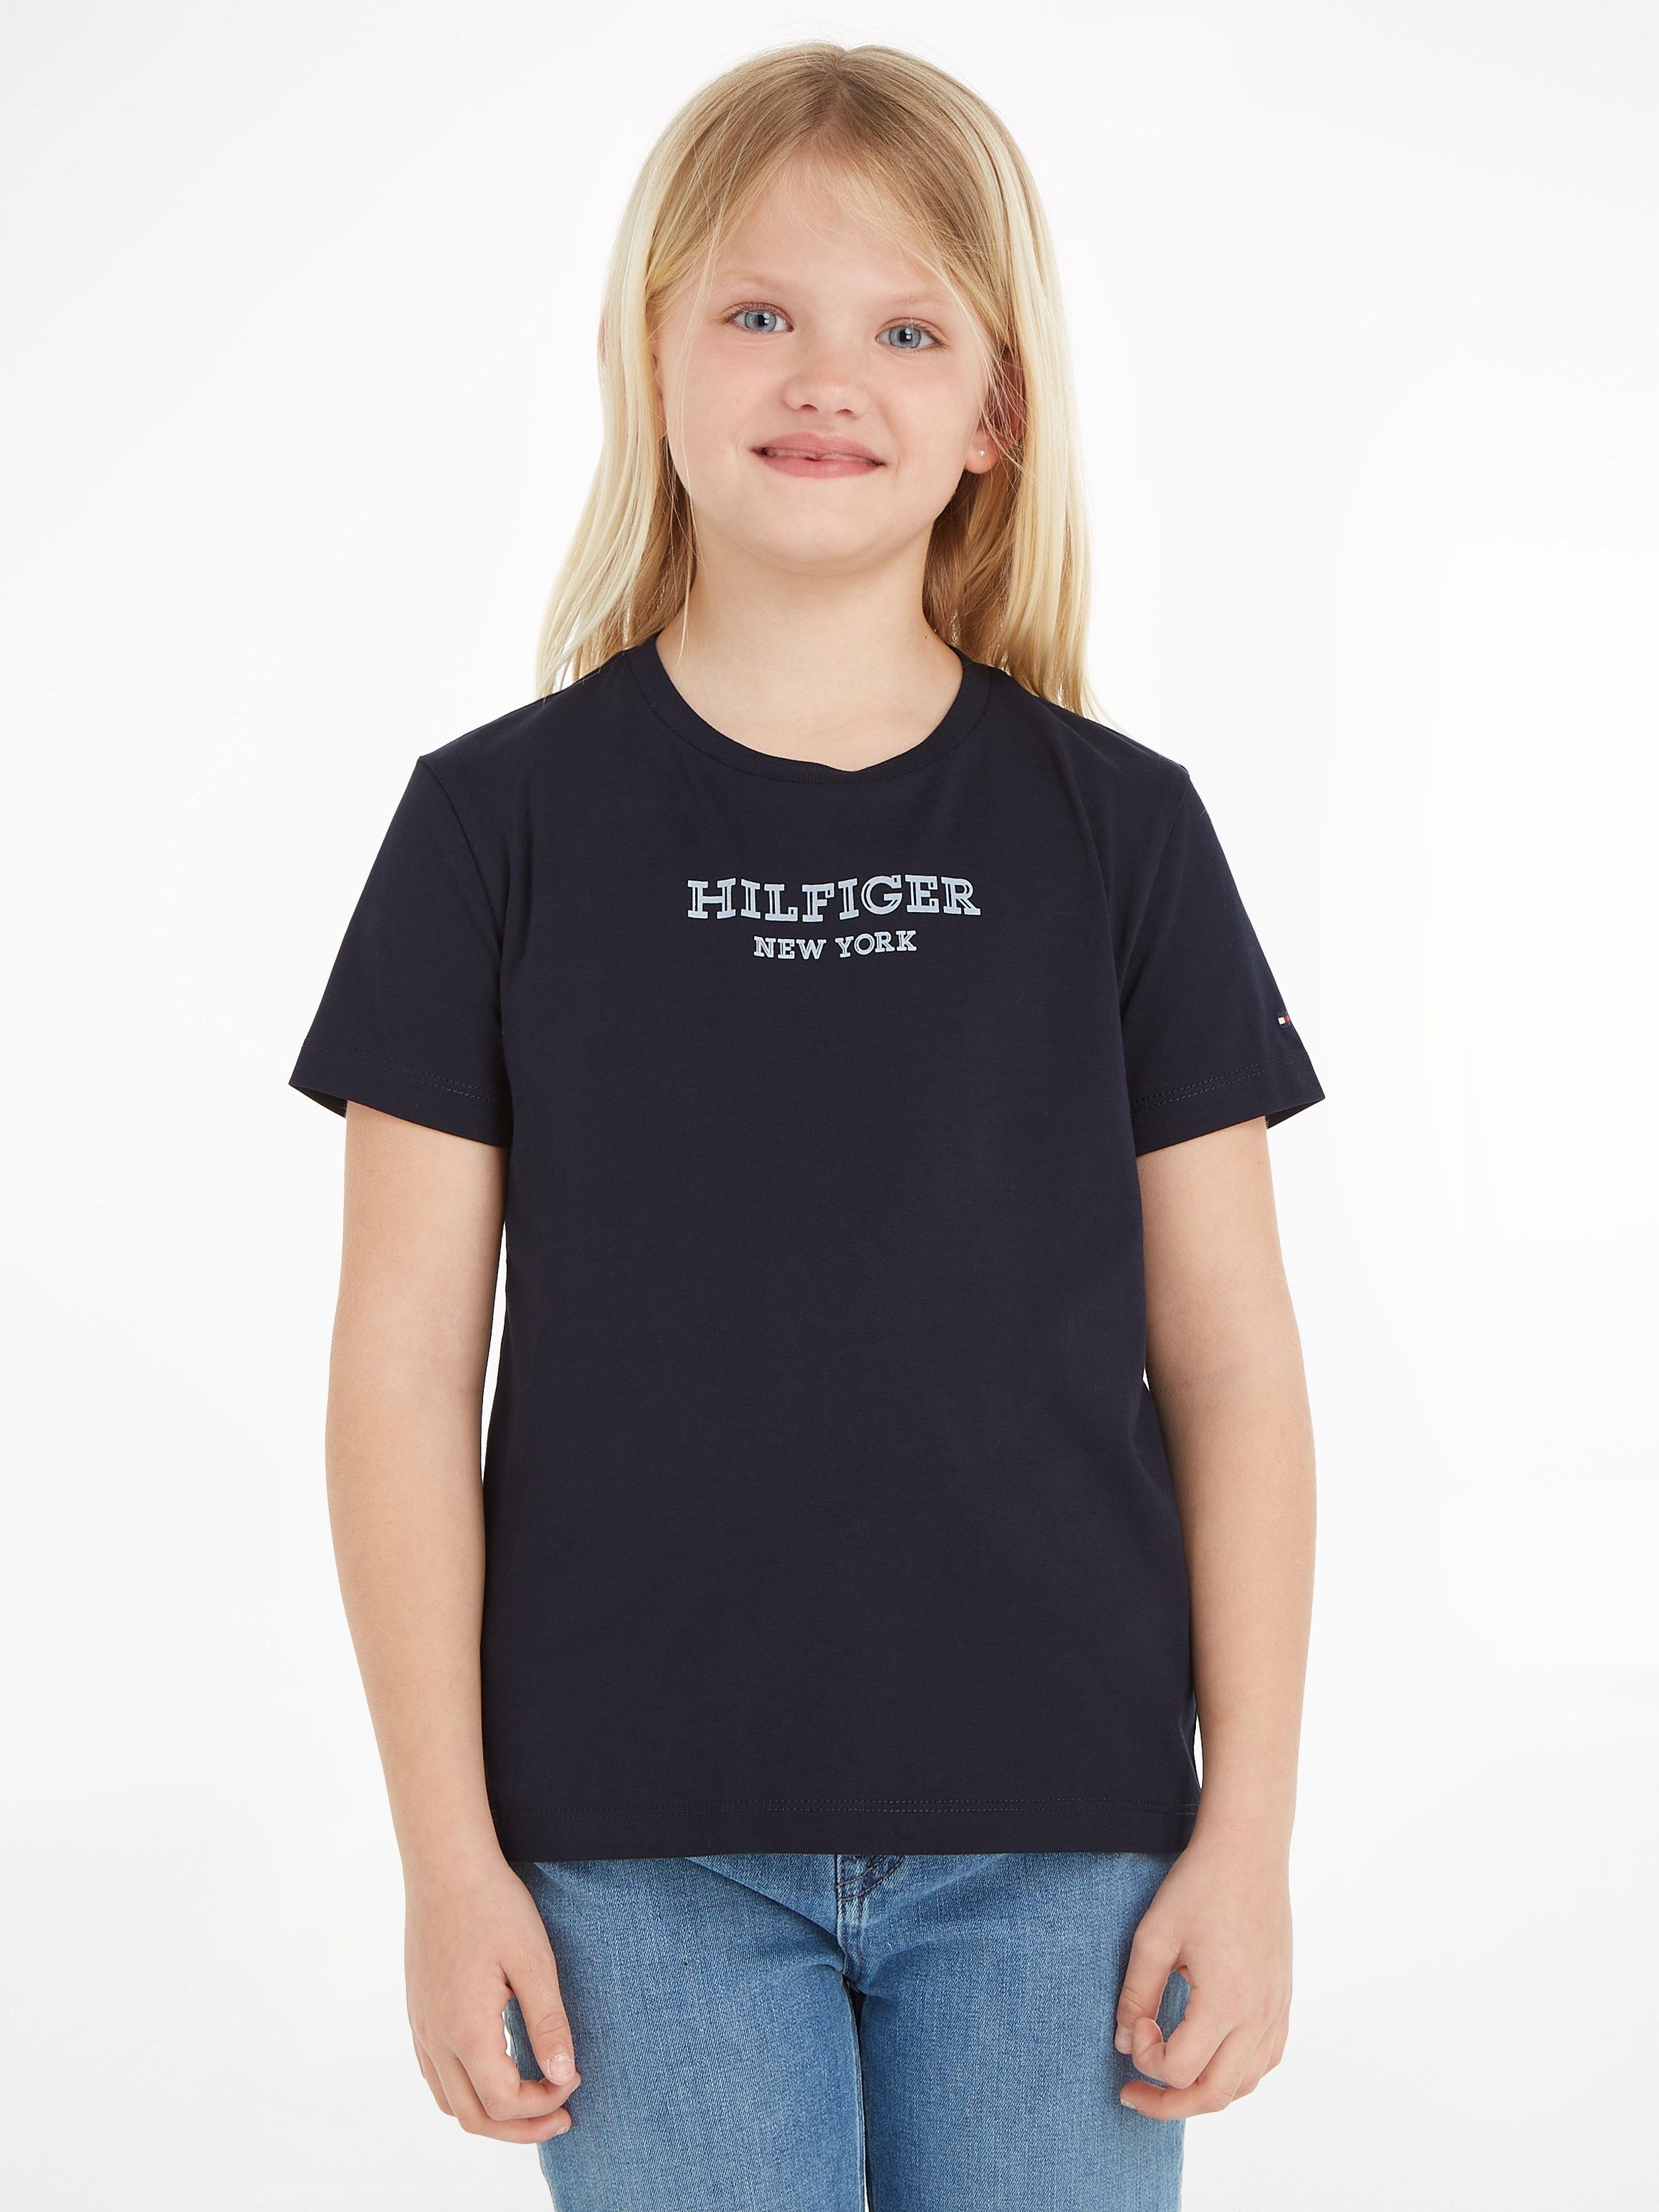 Tommy Hilfiger T-shirt MONOTYPE met tekst zwart Meisjes Katoen Ronde hals 104